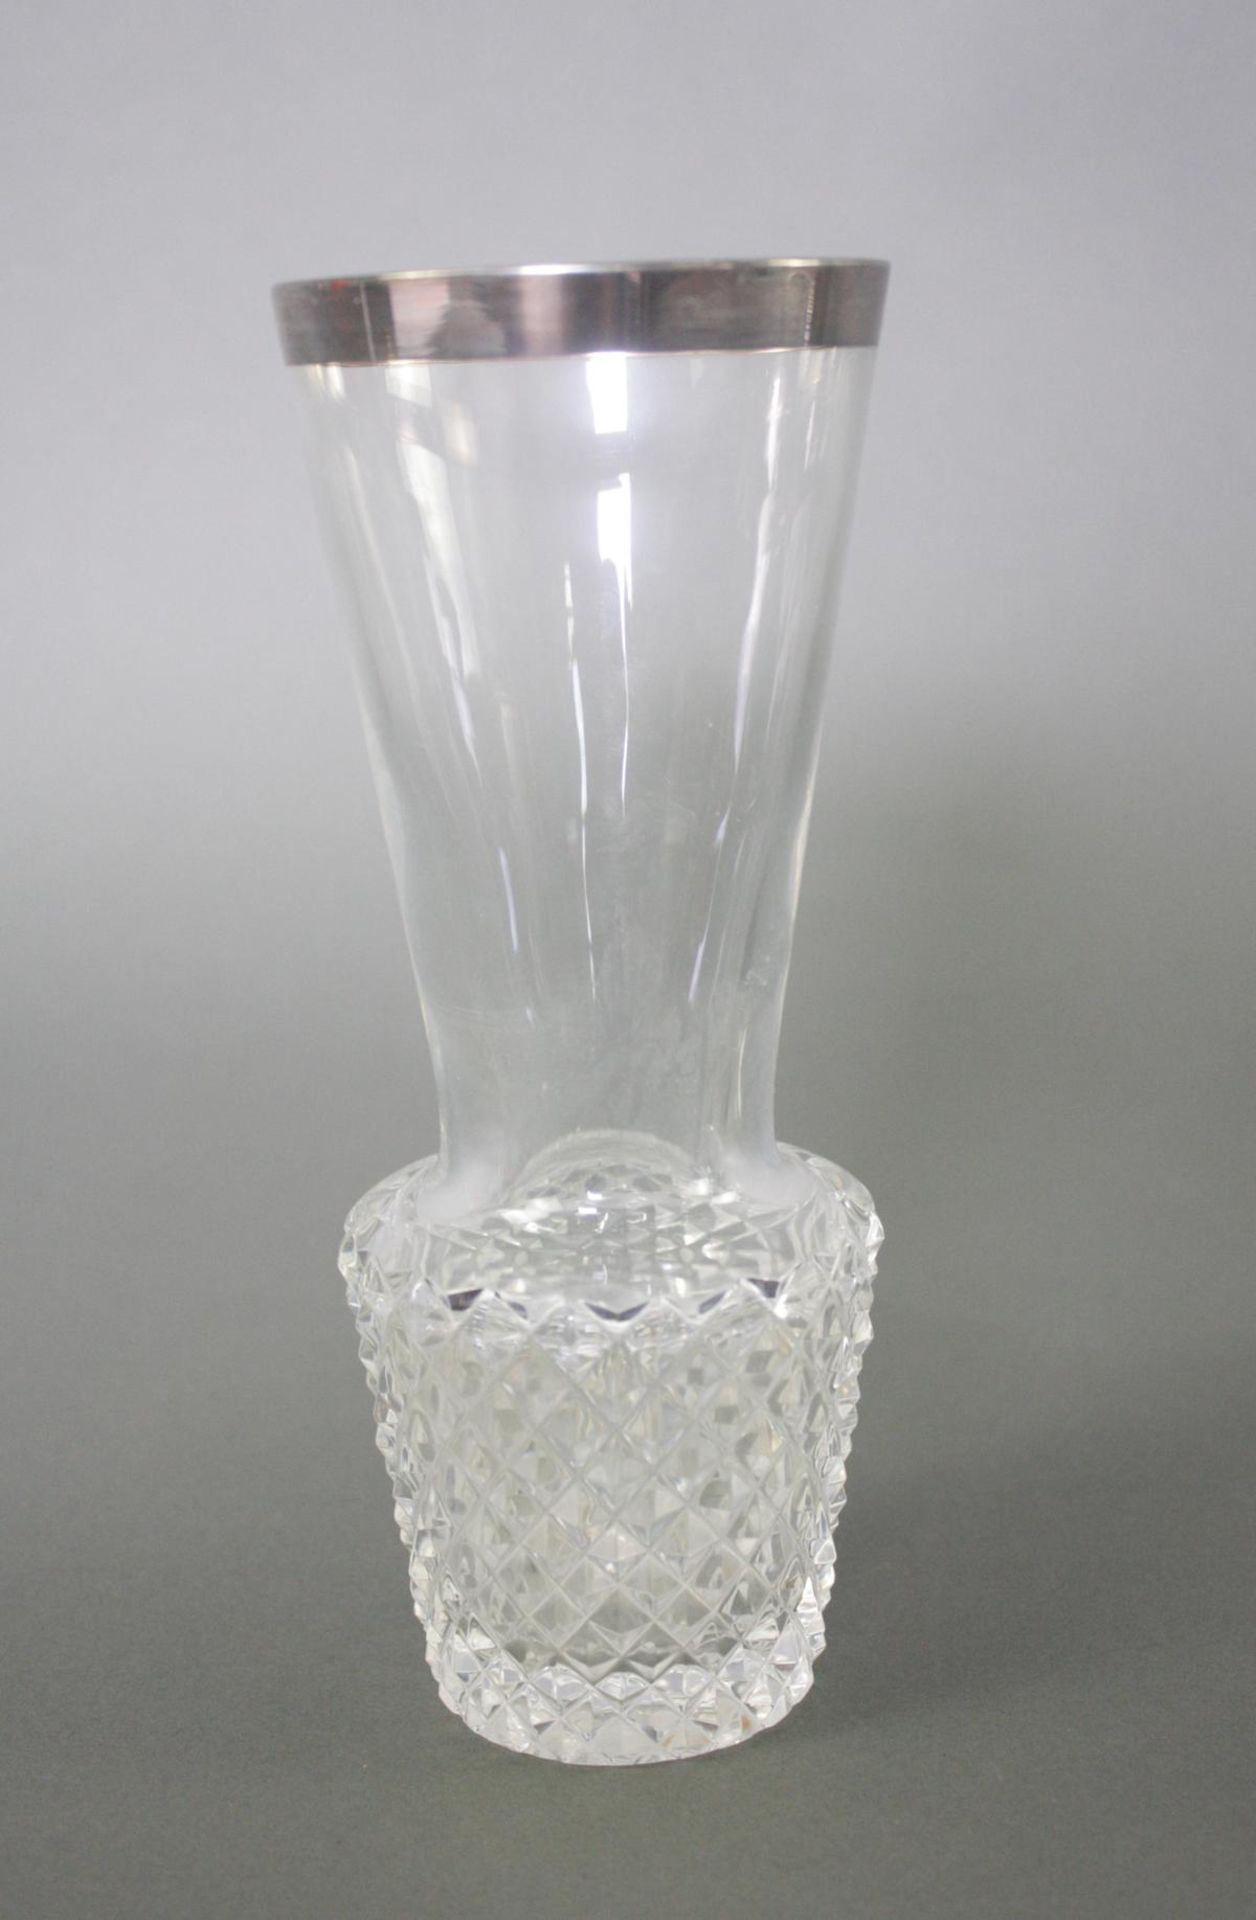 3 Teile Kristall mit Silbermontur. Karaffe, Schale und Vase - Bild 5 aus 5